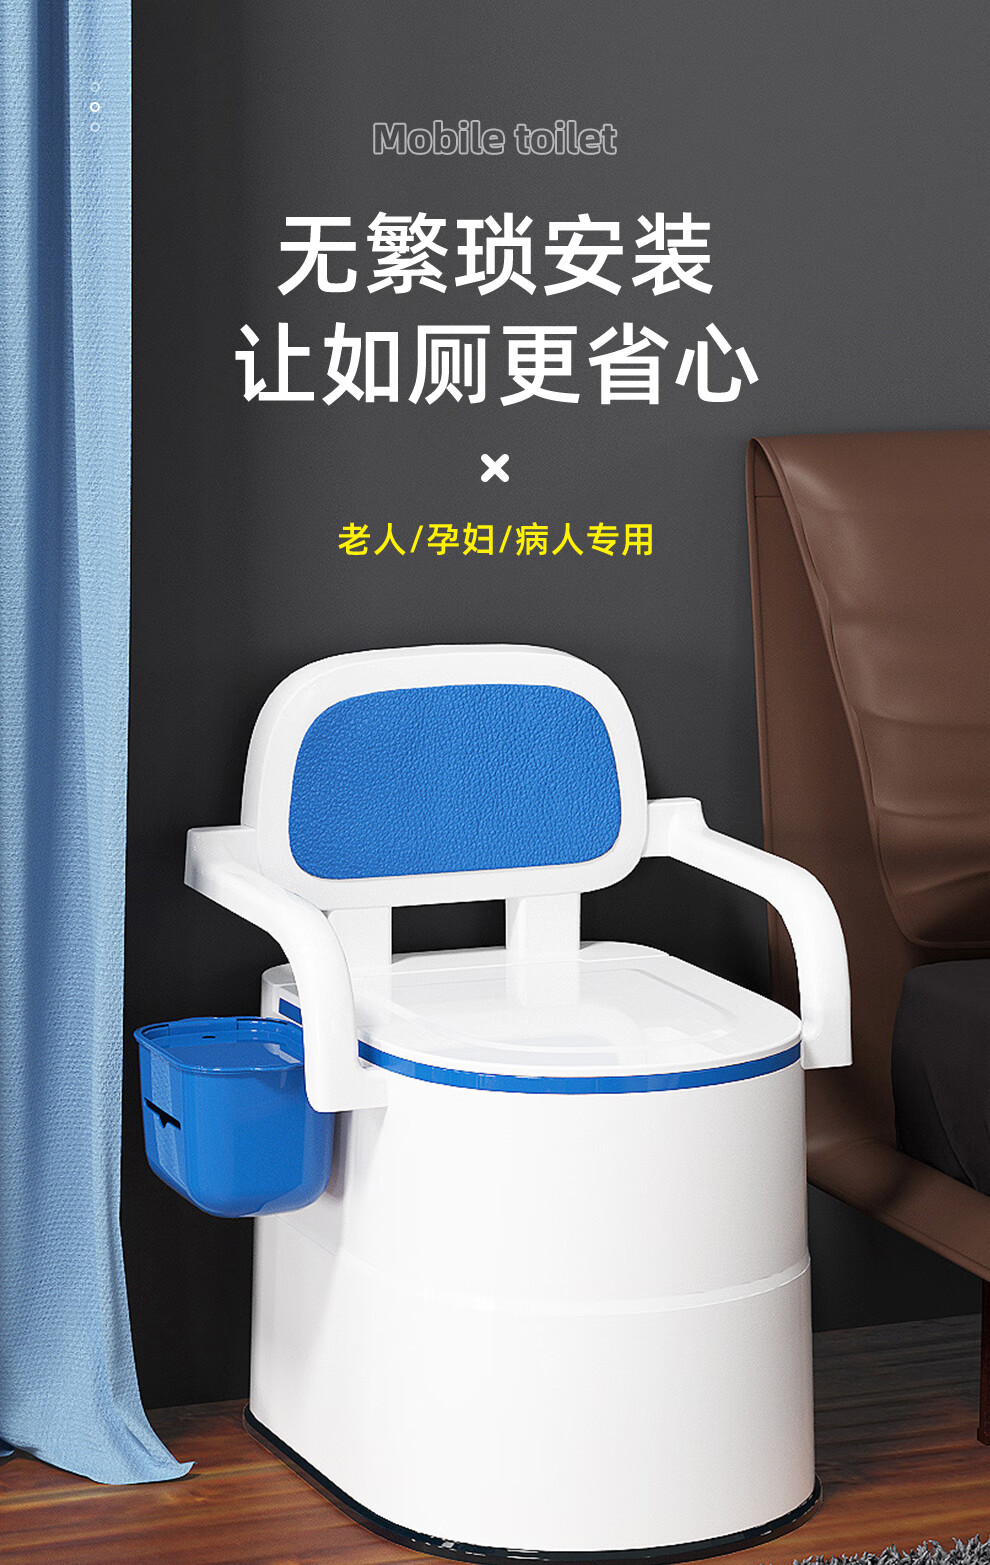 安美度移动马桶老人坐便椅坐便器孕妇马桶便携式马桶老年人可移动马桶